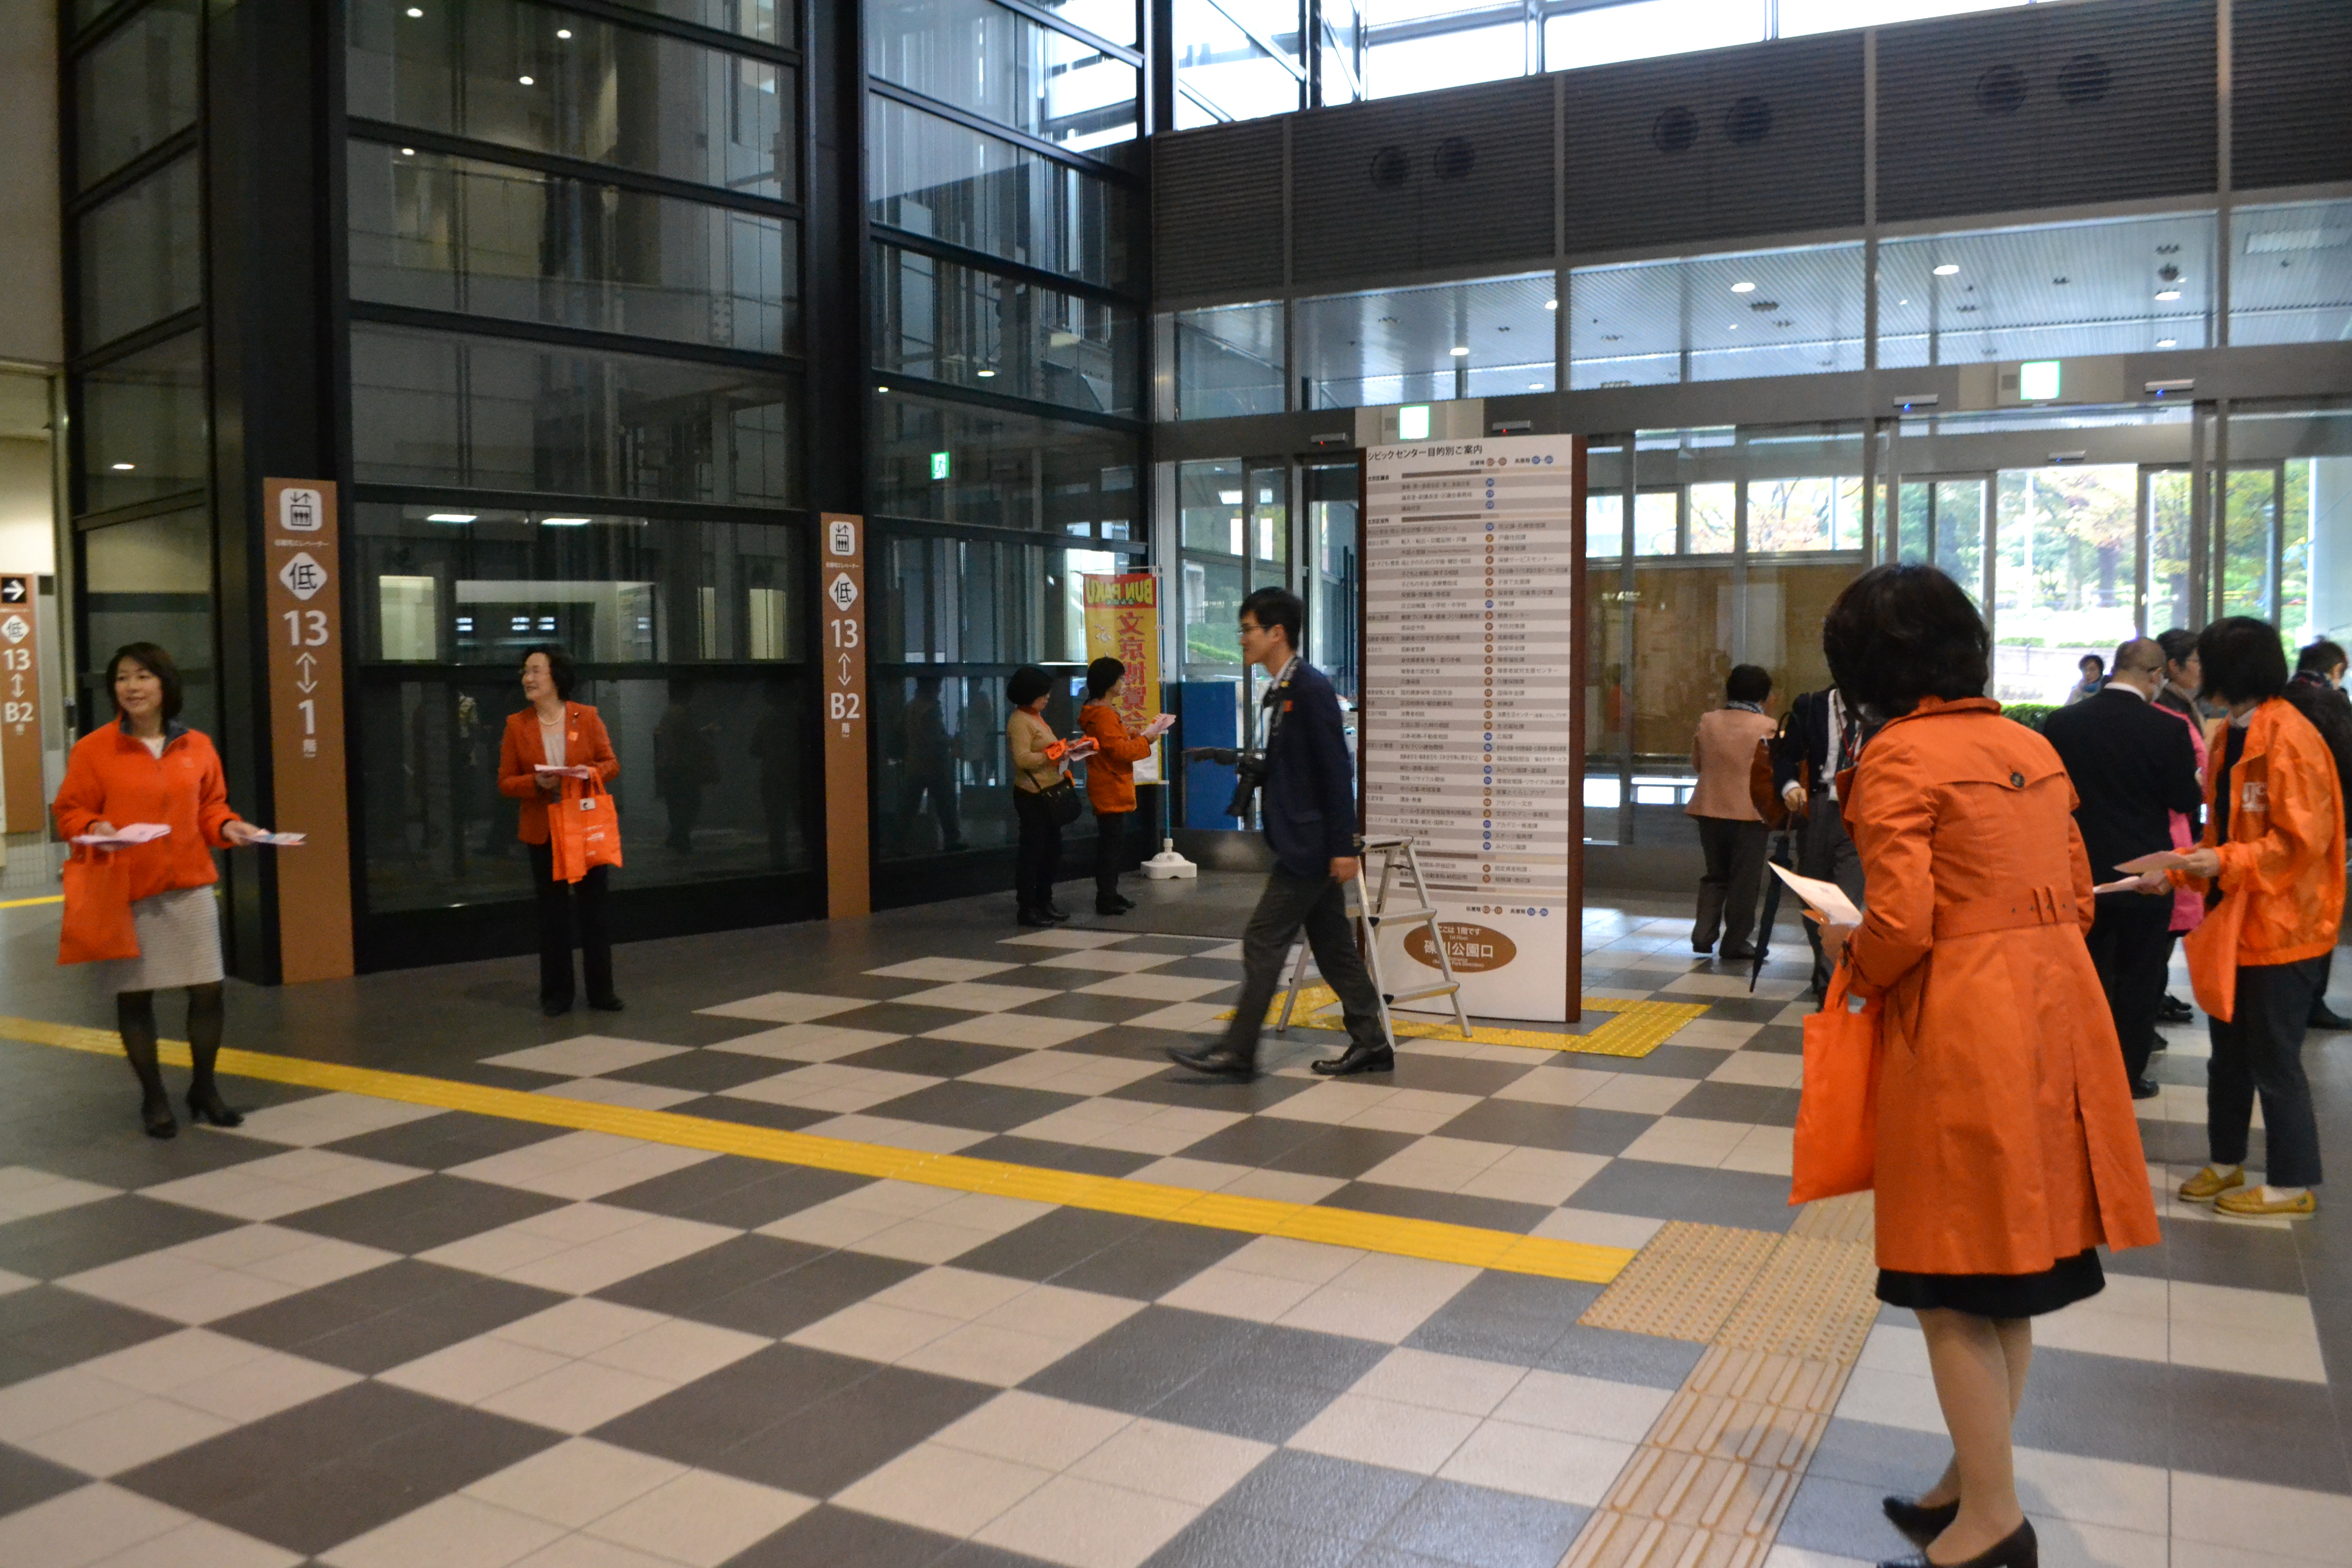 オレンジエコバック配布と女性に対する暴力撤廃メッセージを呼びかける文京区議会議員のボランティア